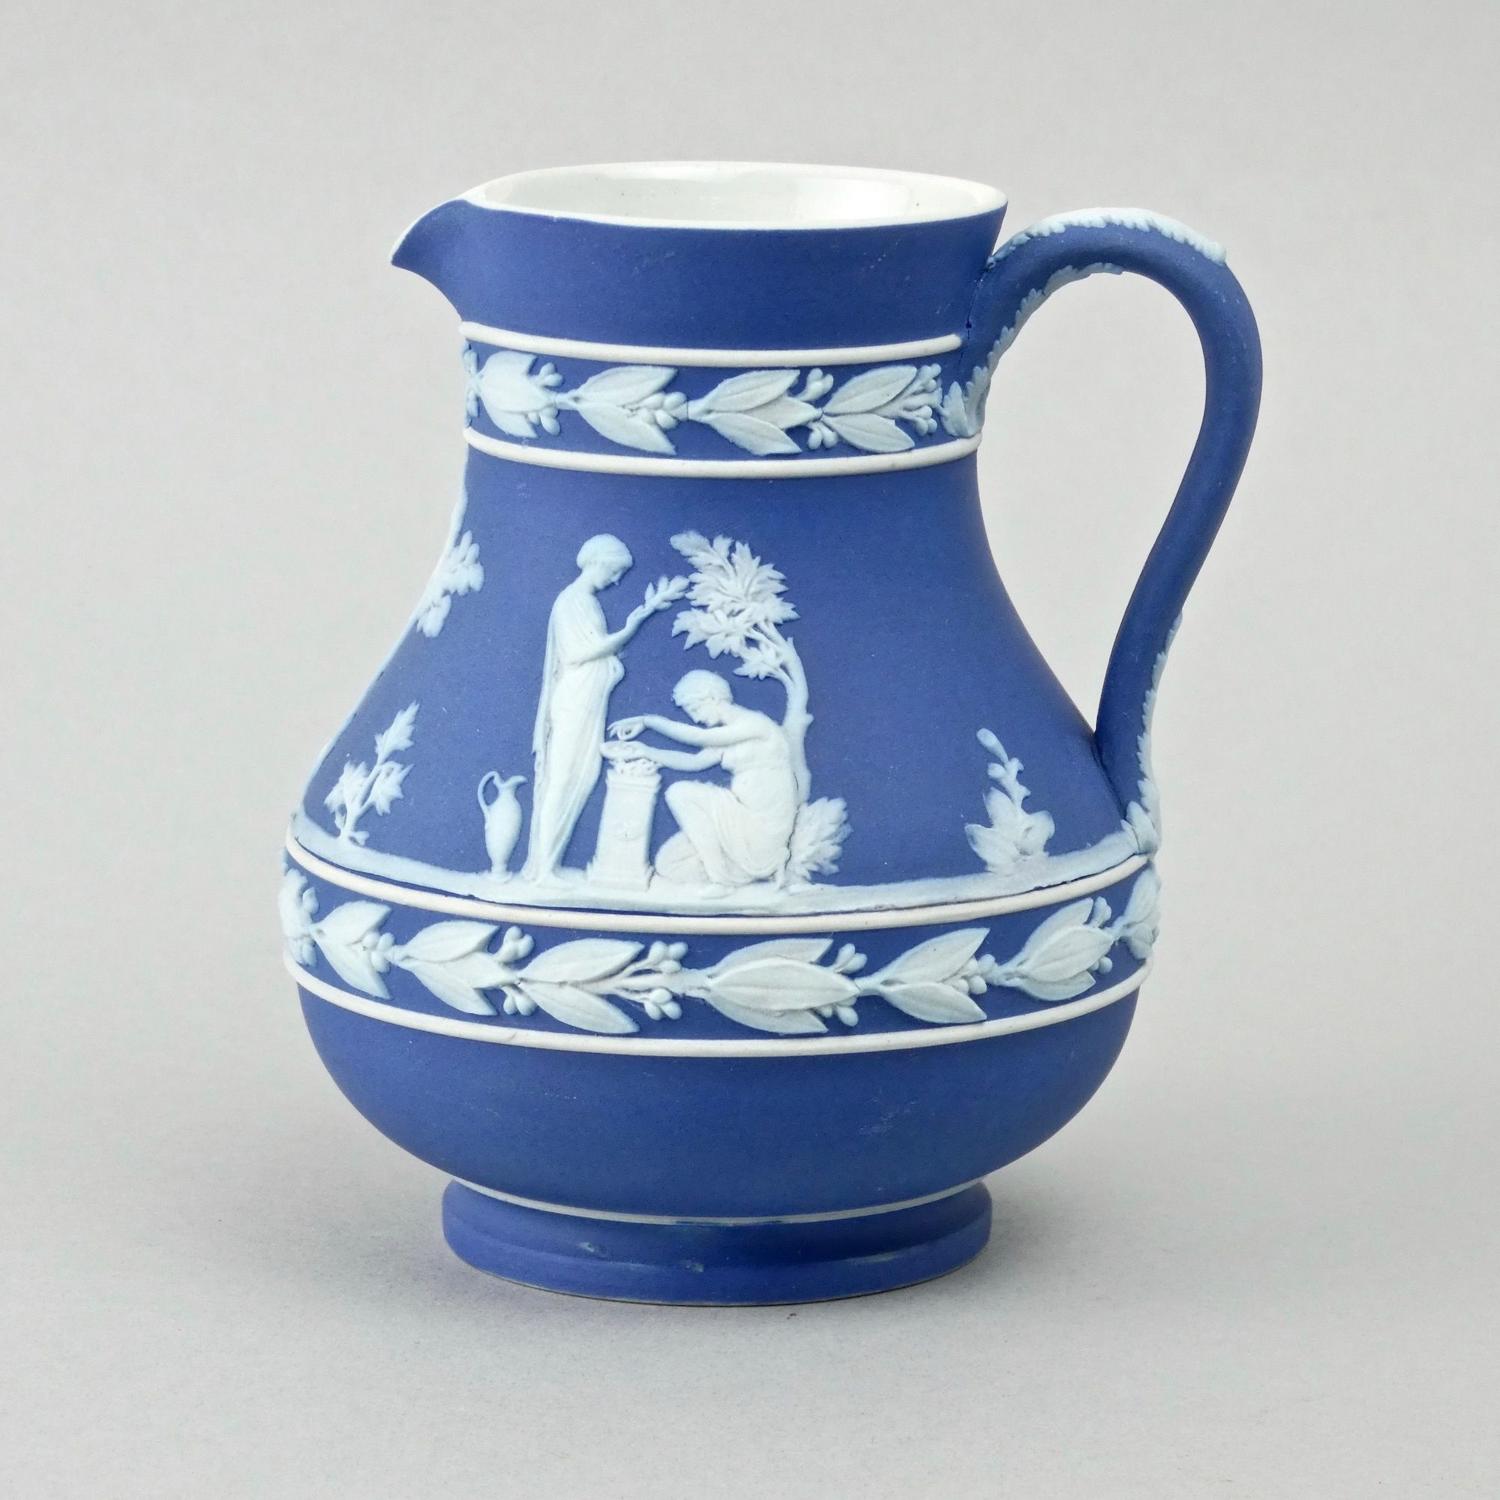 Wedgwood 'Etruscan' shaped jug